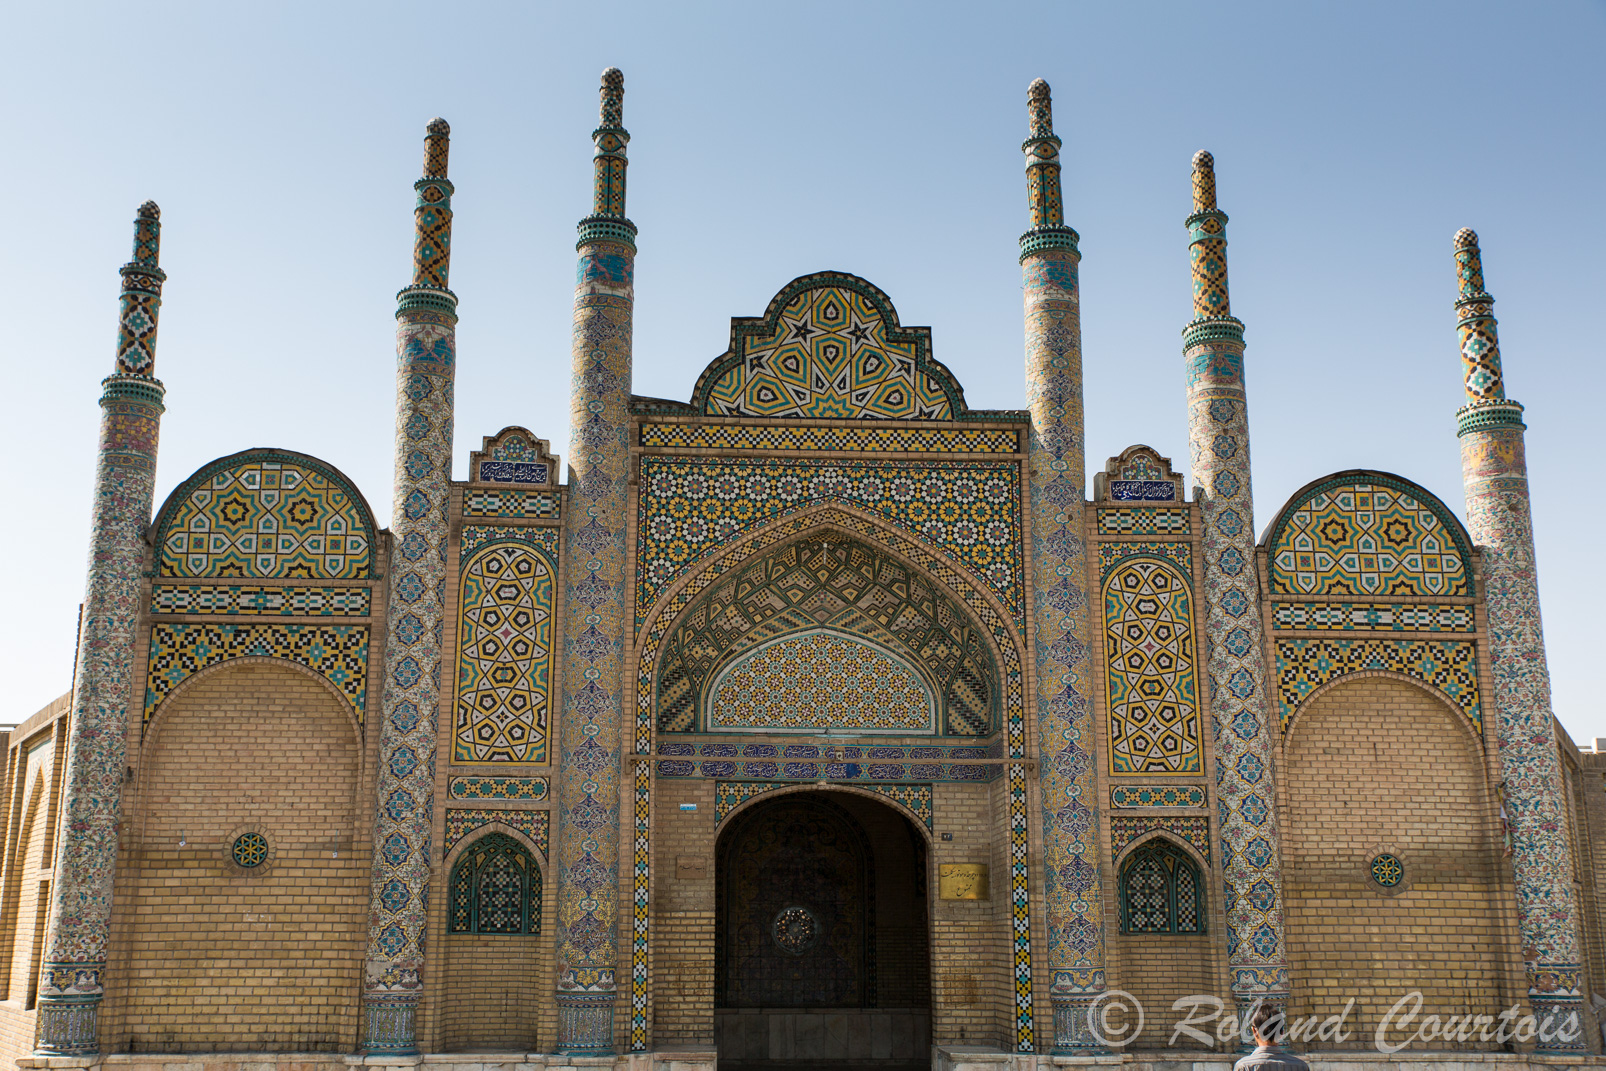 A Qazvin, le Mausolée Imâmzâdeh Hosseyn avec ses décorations de l’époque Qadjar très colorées.